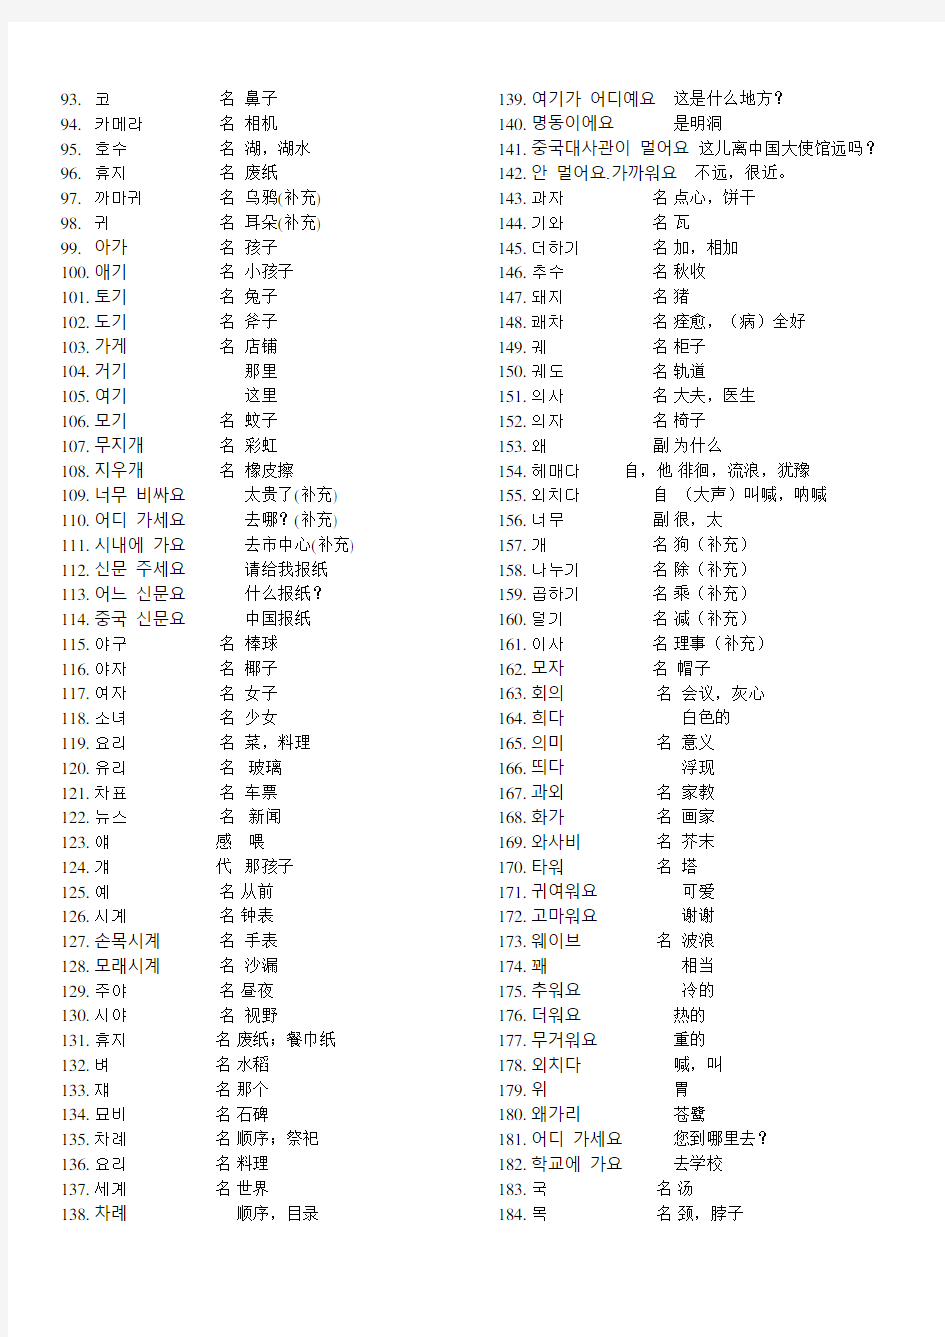 标准韩国语第一册(初级) 单词表